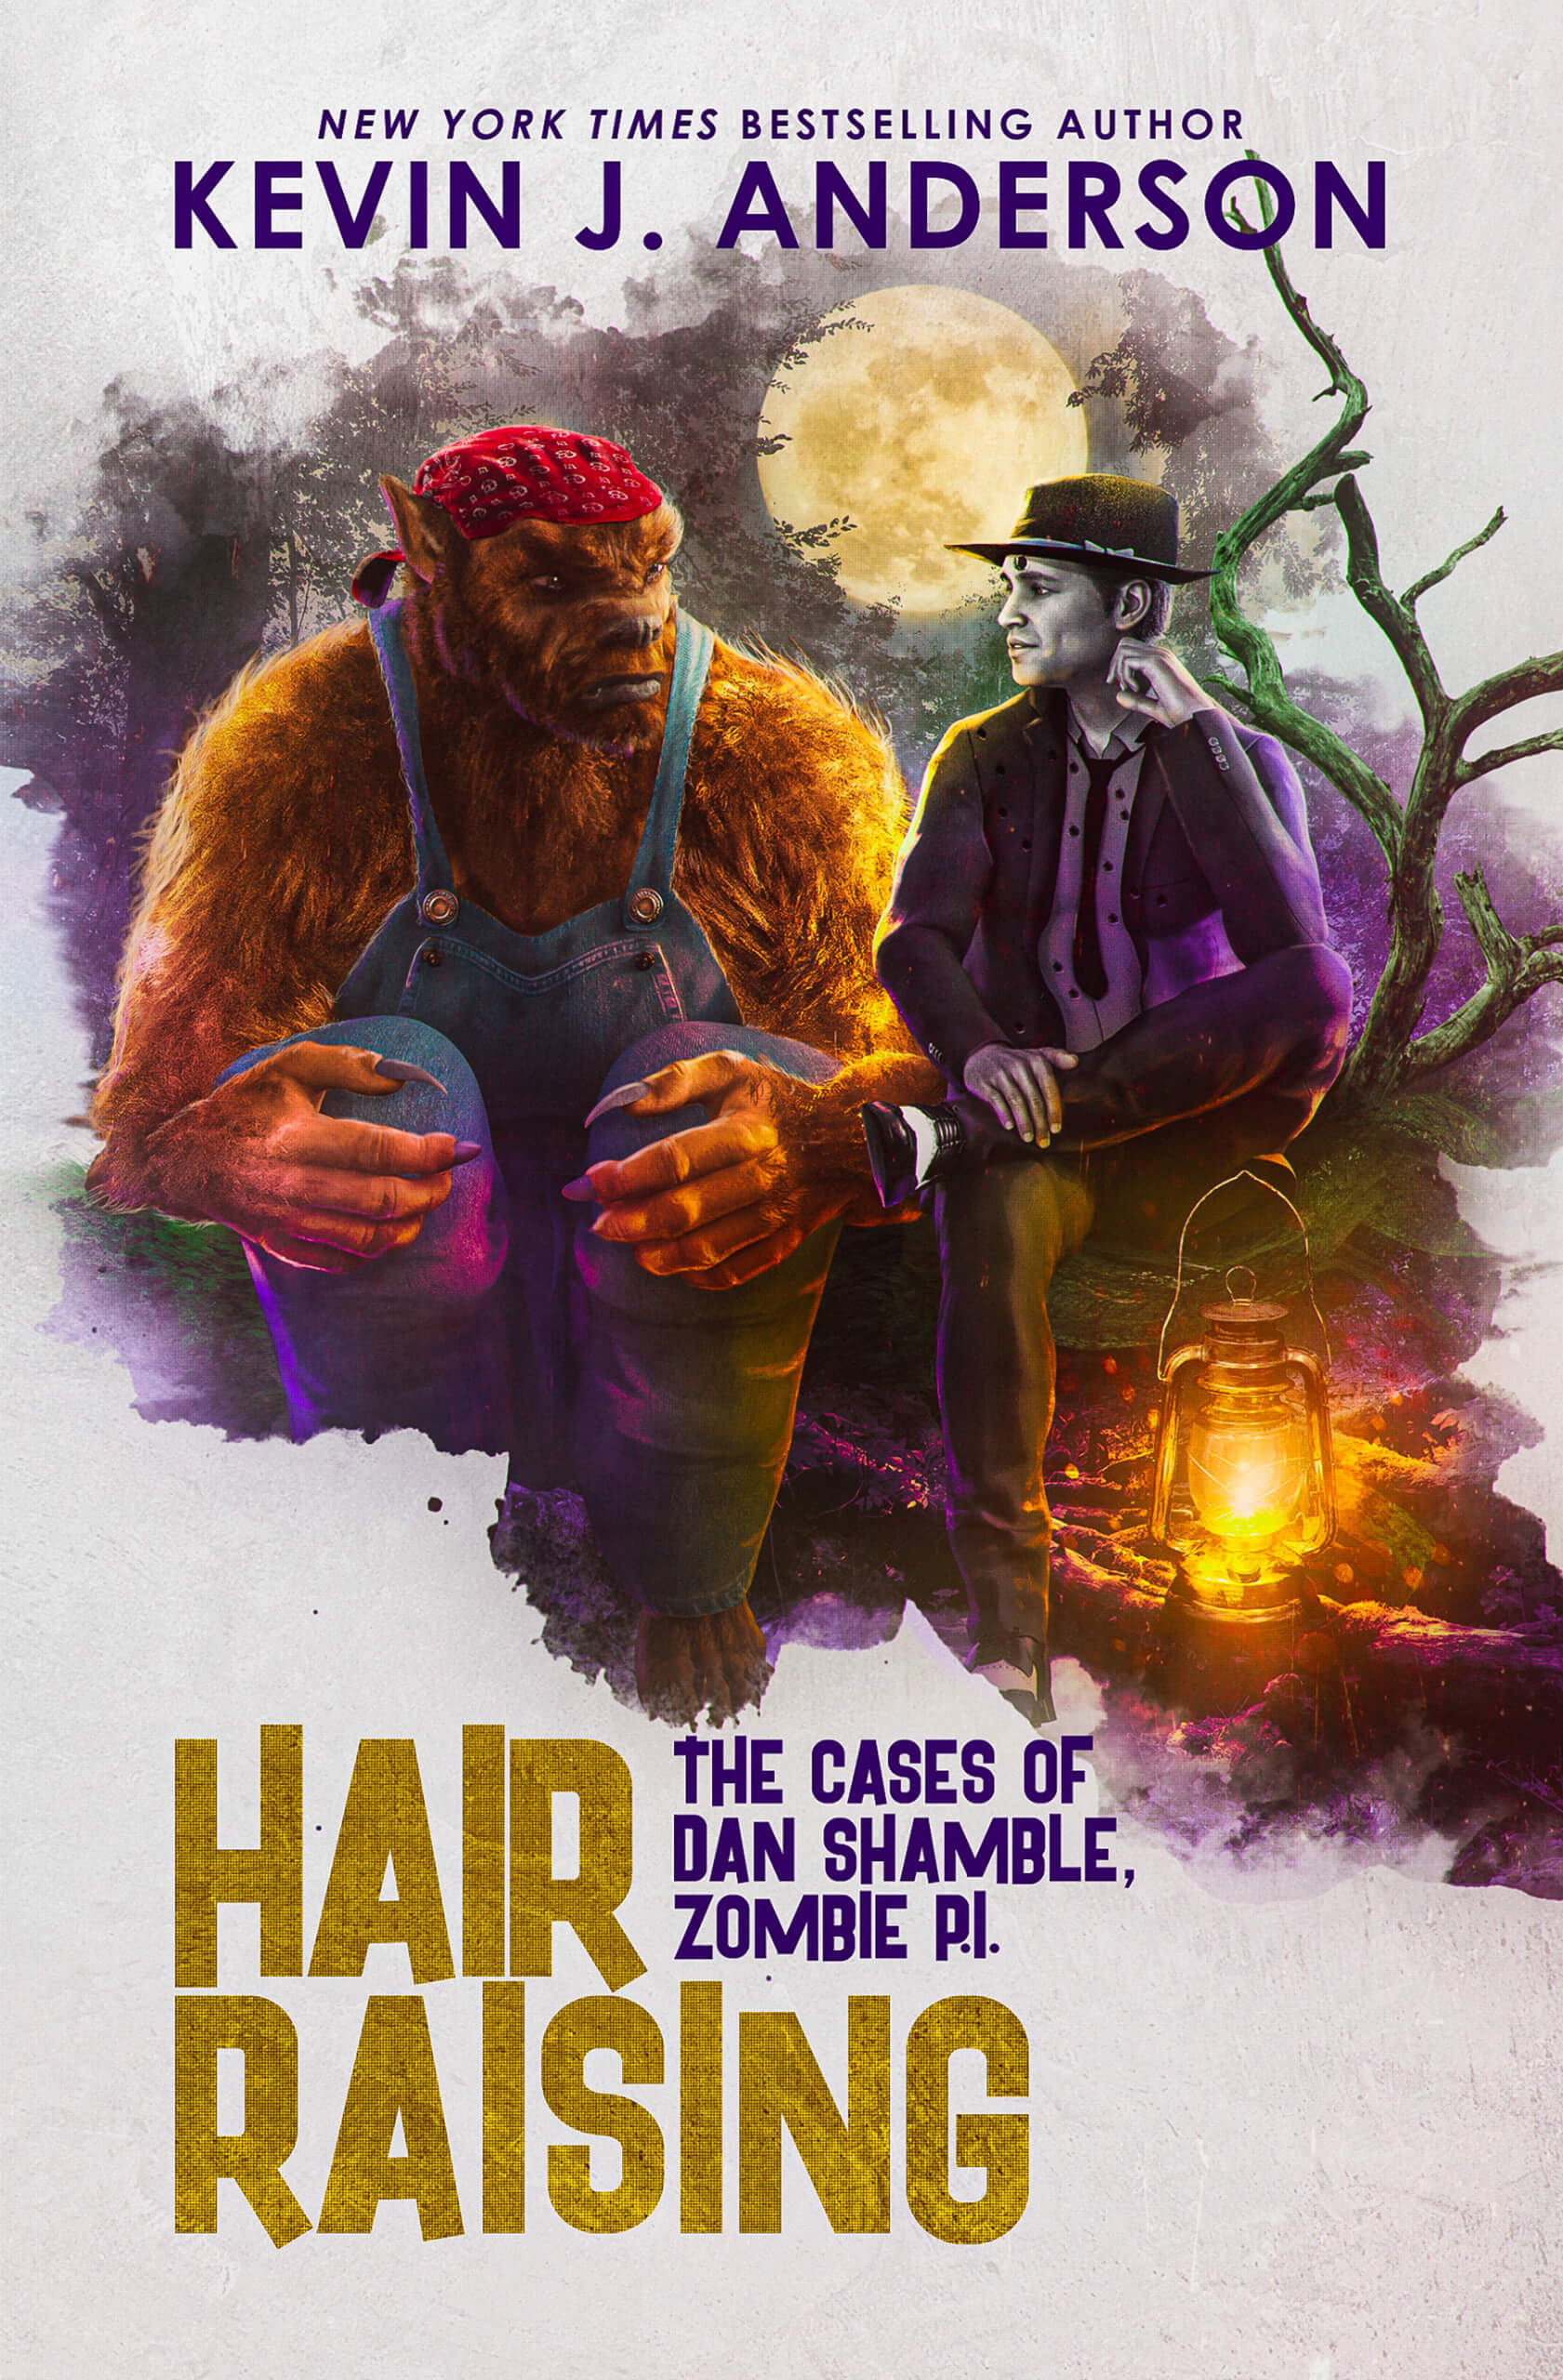 Dan Shamble, Zombie PI: Hair Raising